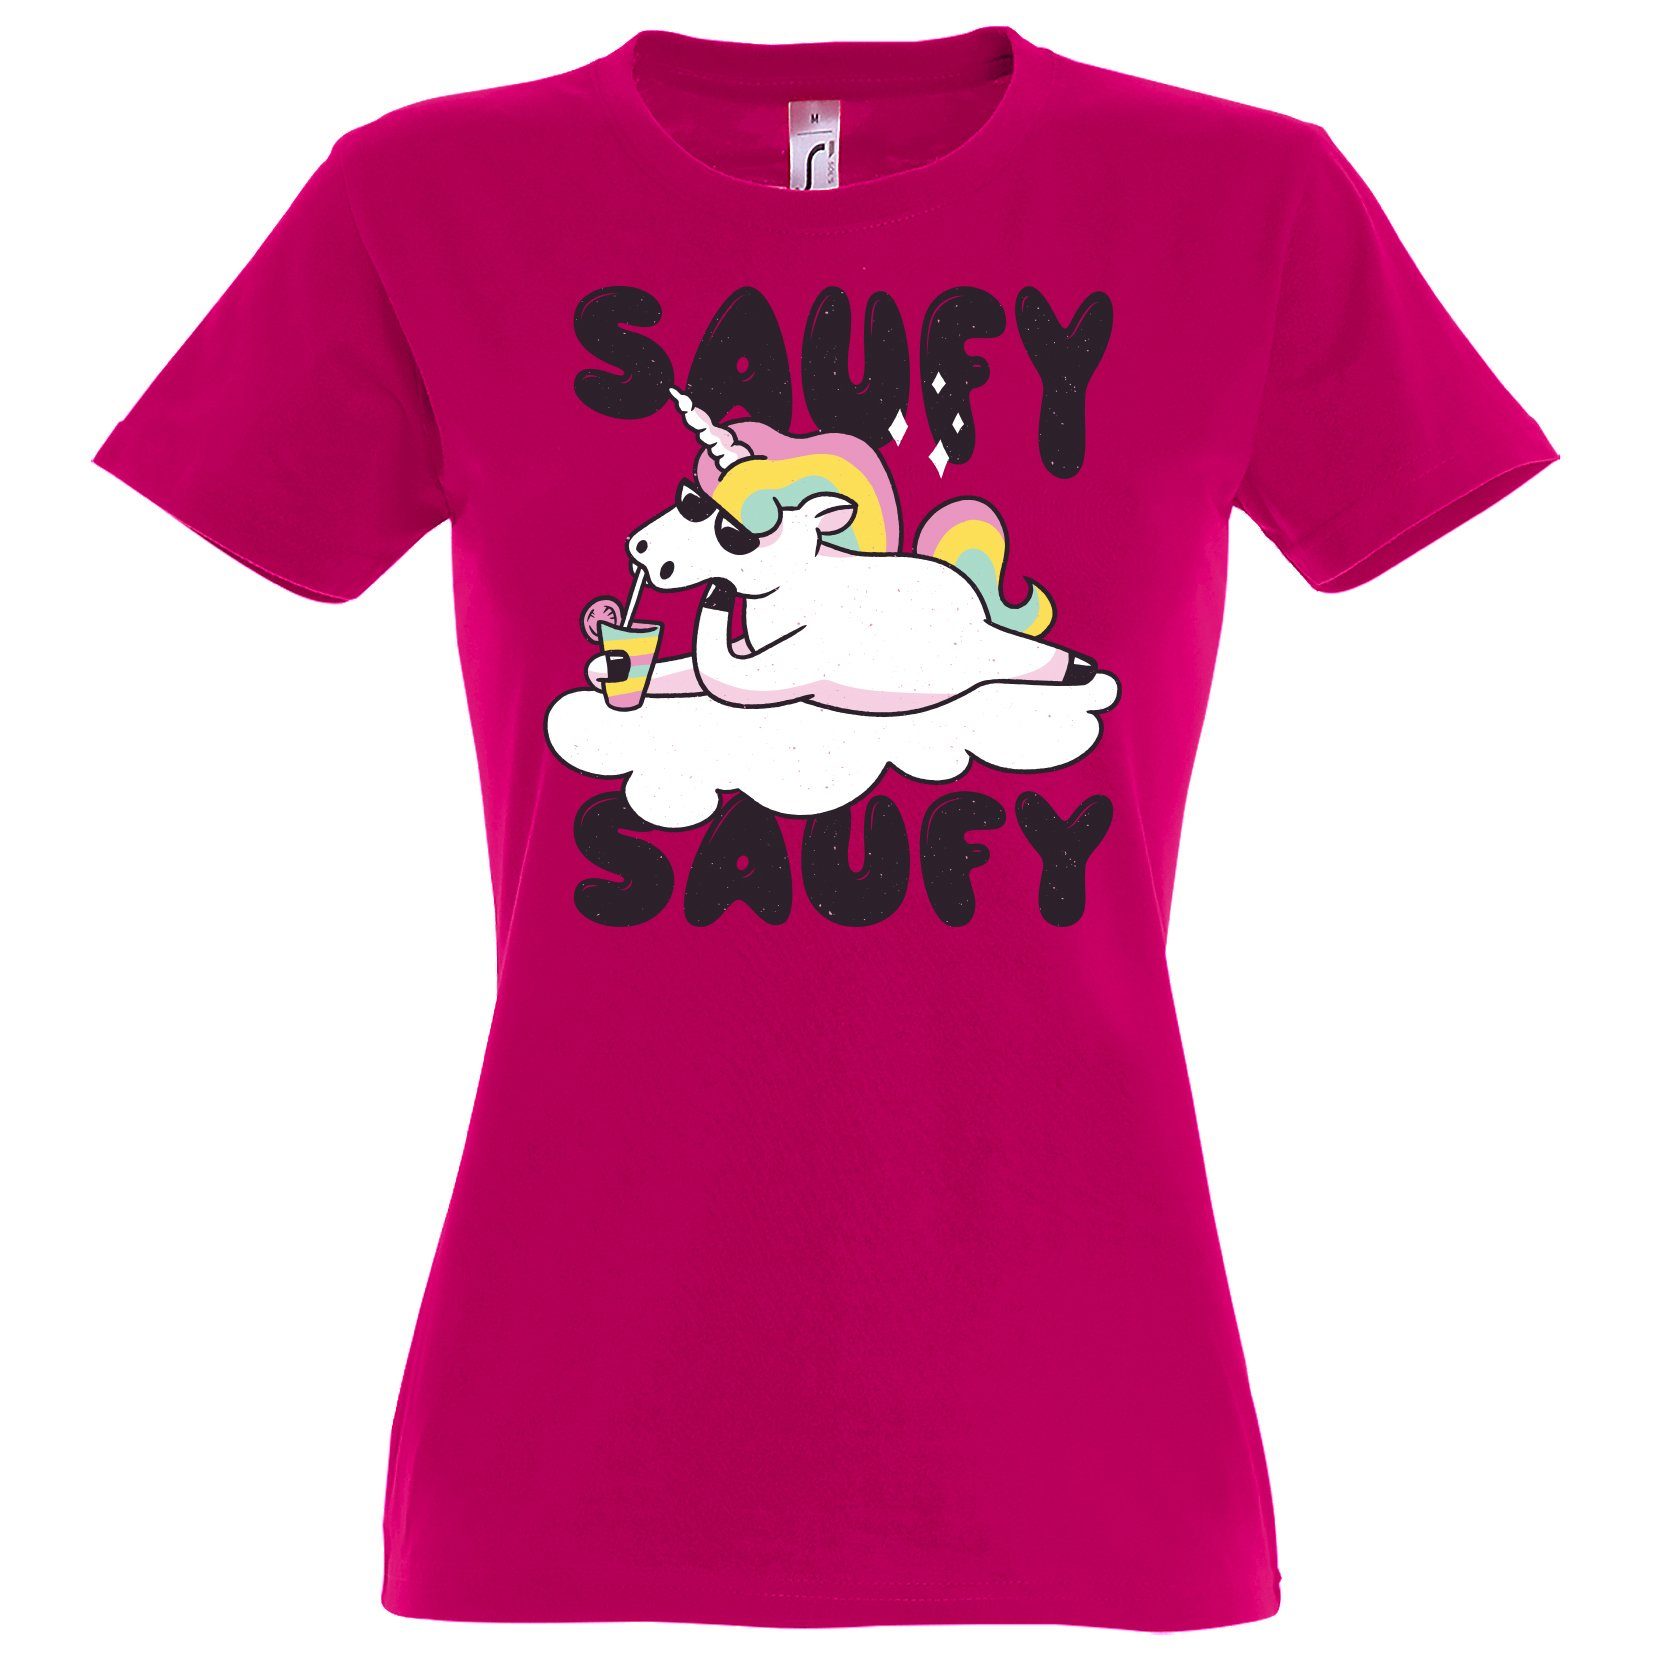 Youth Designz Print-Shirt SAUFY SAUFY Einhorn Damen T-Shirt mit Fun-Look Unicorn Aufdruck und lustigem Spruch Fuchsia